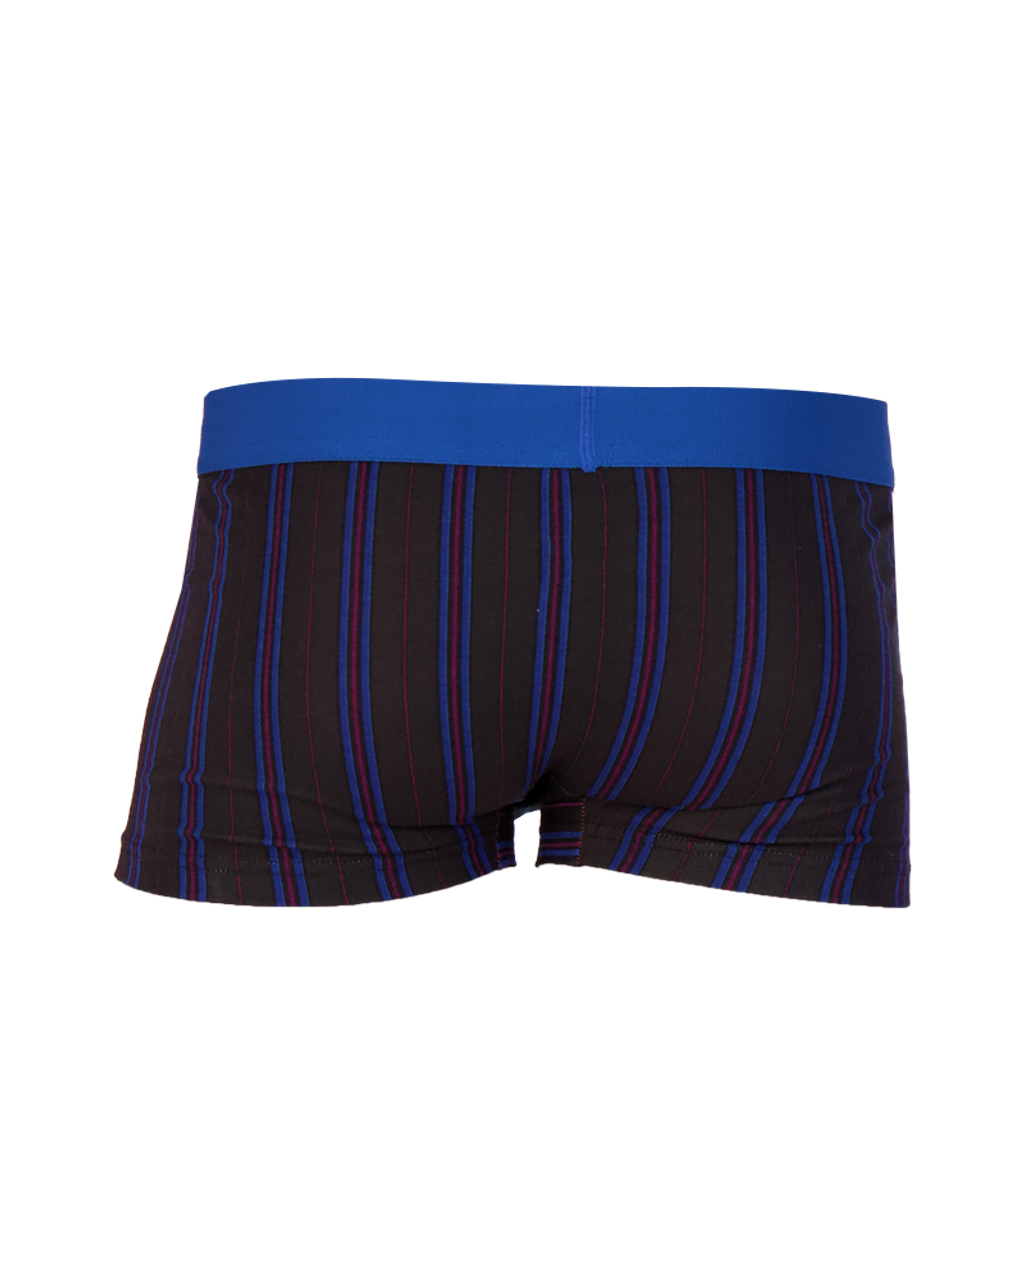 Trunk Style Briefs in Triple Threat Stripe by Wood Underwear